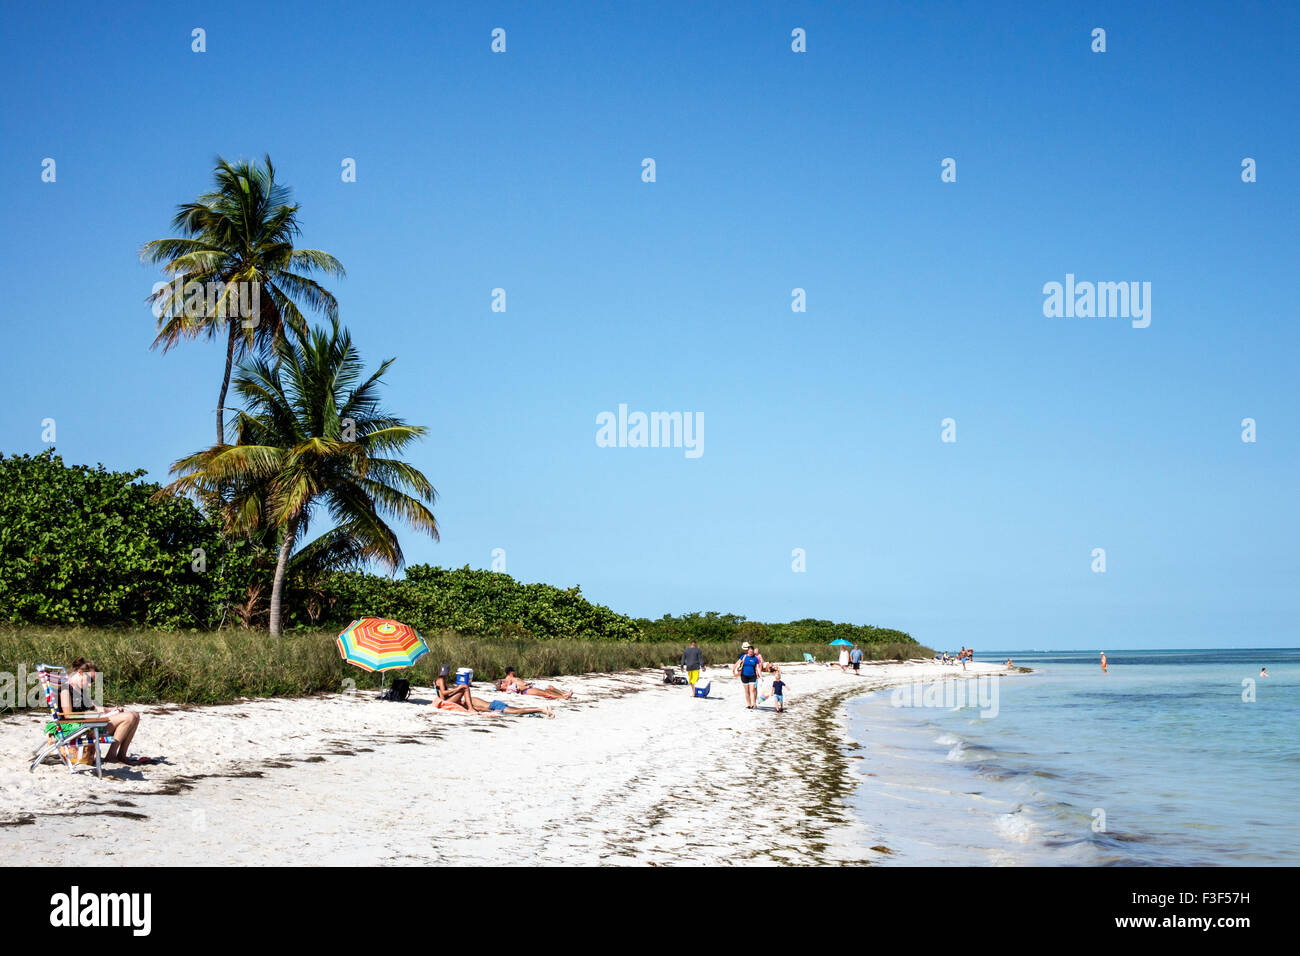 Florida Keys, Big Pine Key, Bahia Honda State Park, océan Atlantique, plage, bains de soleil, palmiers, FL150508047 Banque D'Images